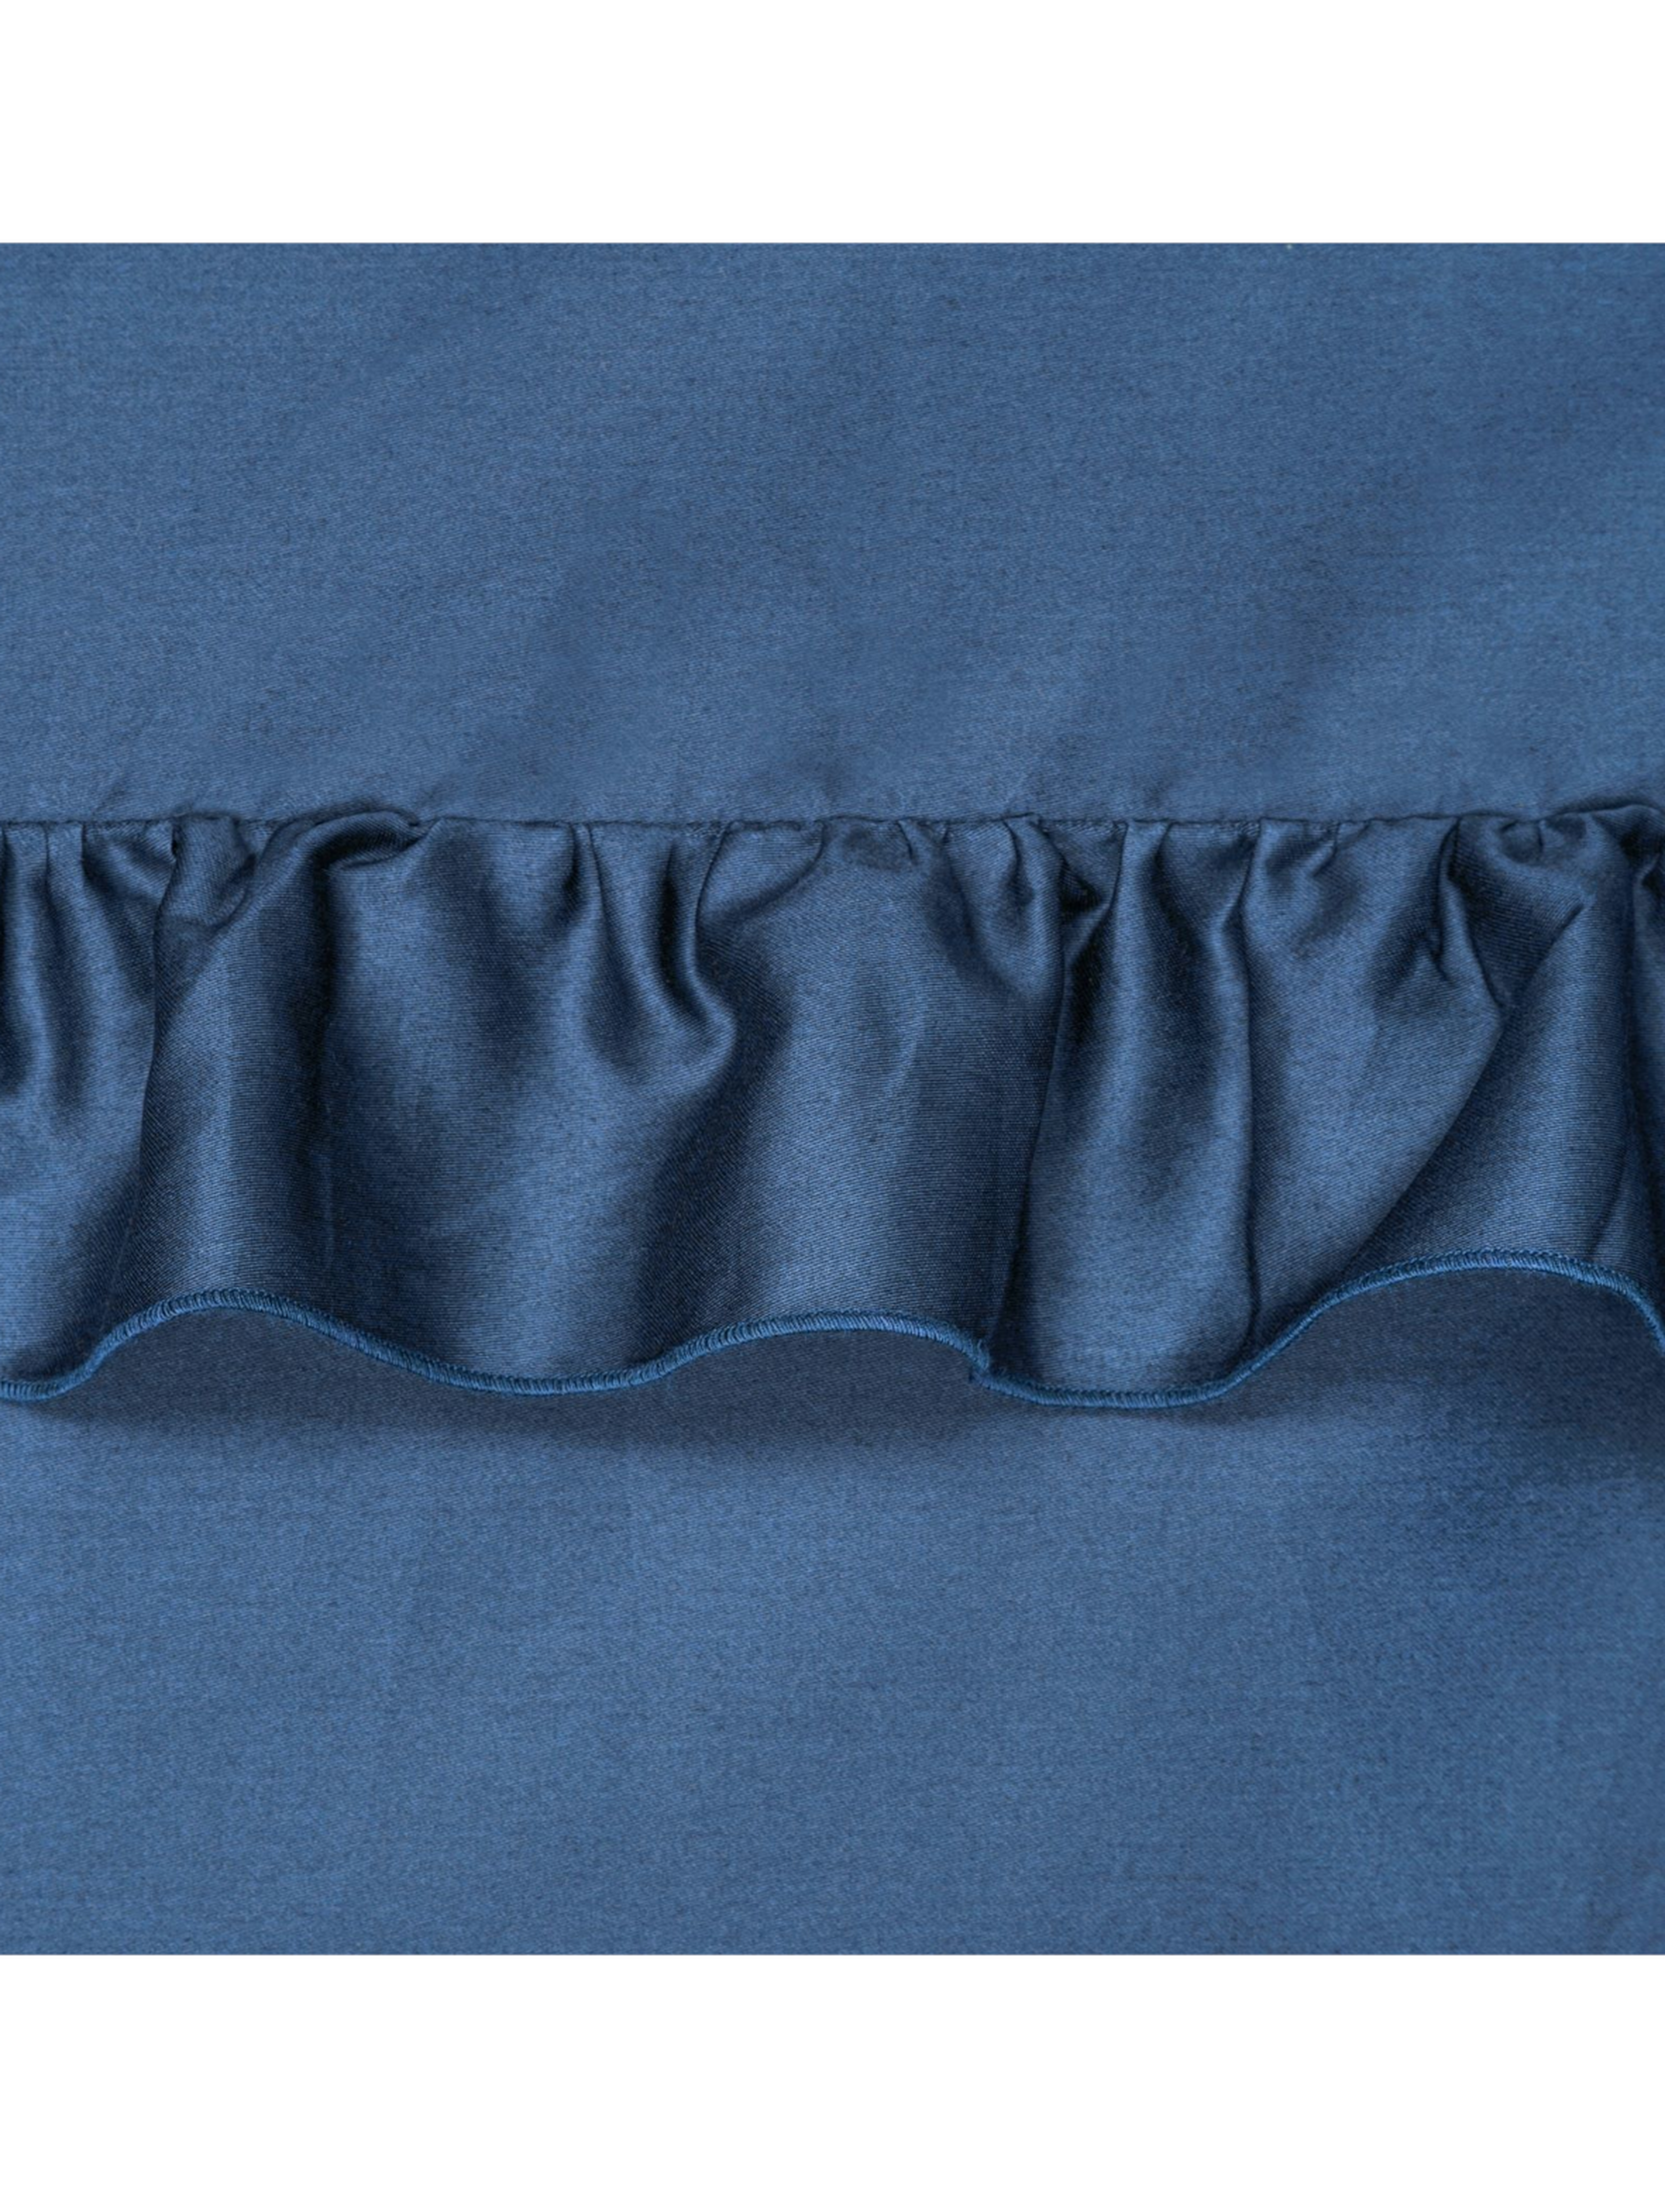 Ciemnoniebieski komplet pościeli satynowej 160x200 cm, 2 szt. 70x80 cm